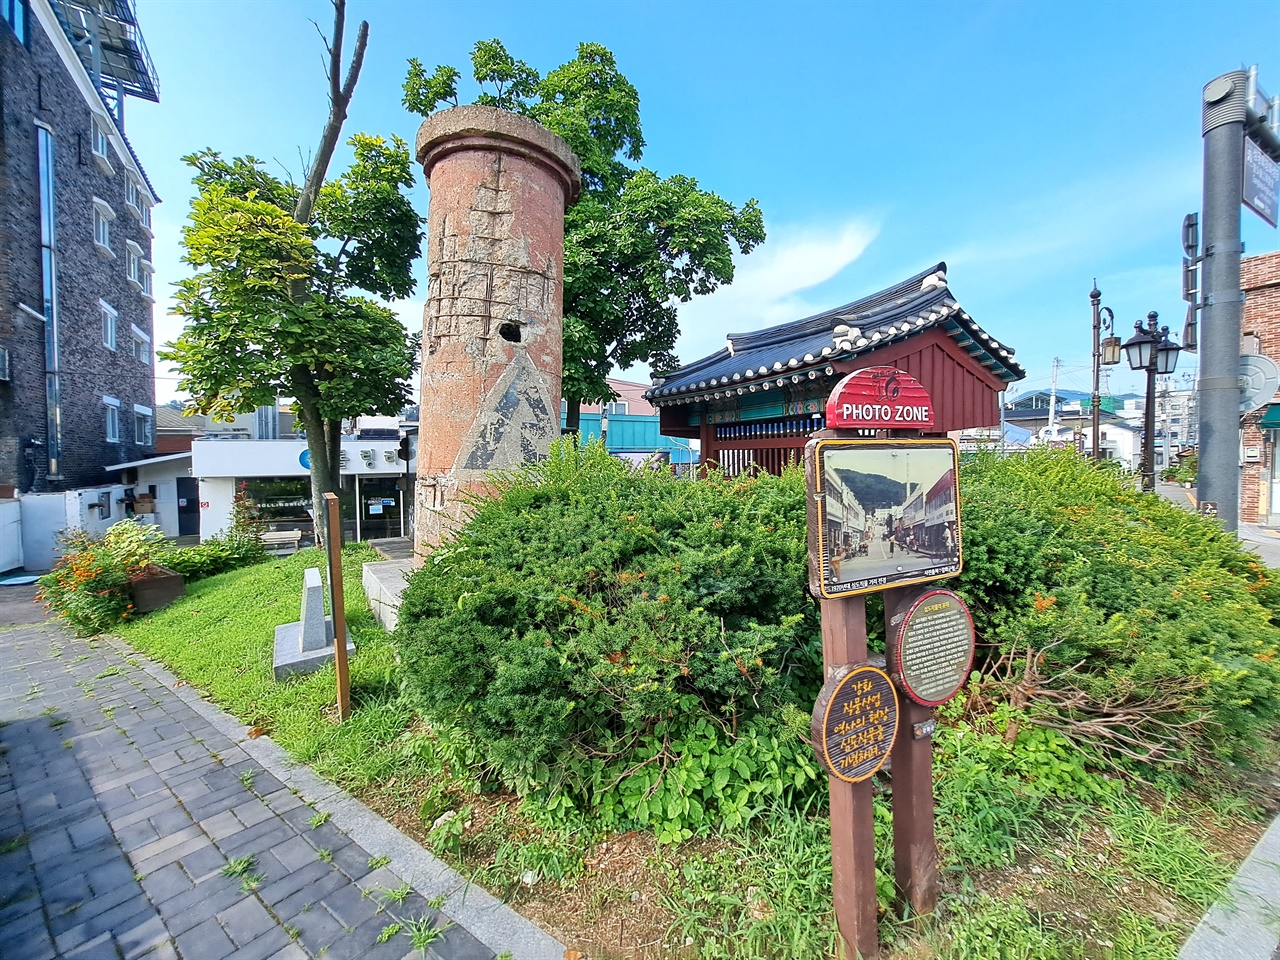 방직 공장 터는 '용흥궁 공원'으로 변했고, 그 상징으로 굴뚝 맨 꼭대기 일부를 잘라 저런 모습으로 보존하였다.